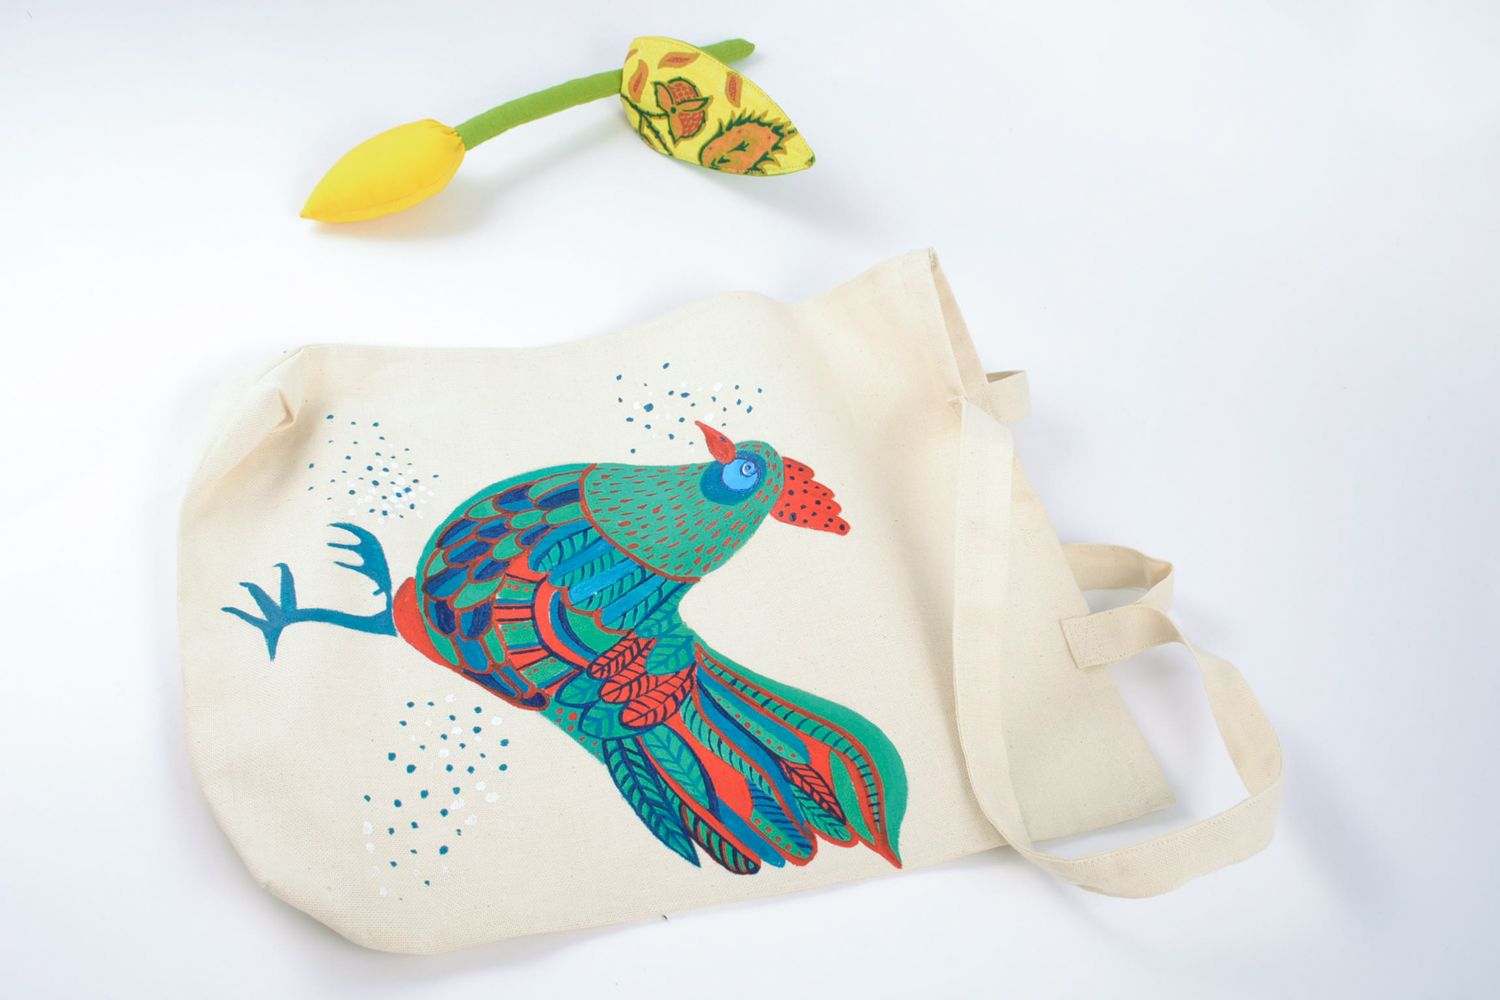 Текстильная сумка из конопляной ткани с нарисованным петухом фото 1